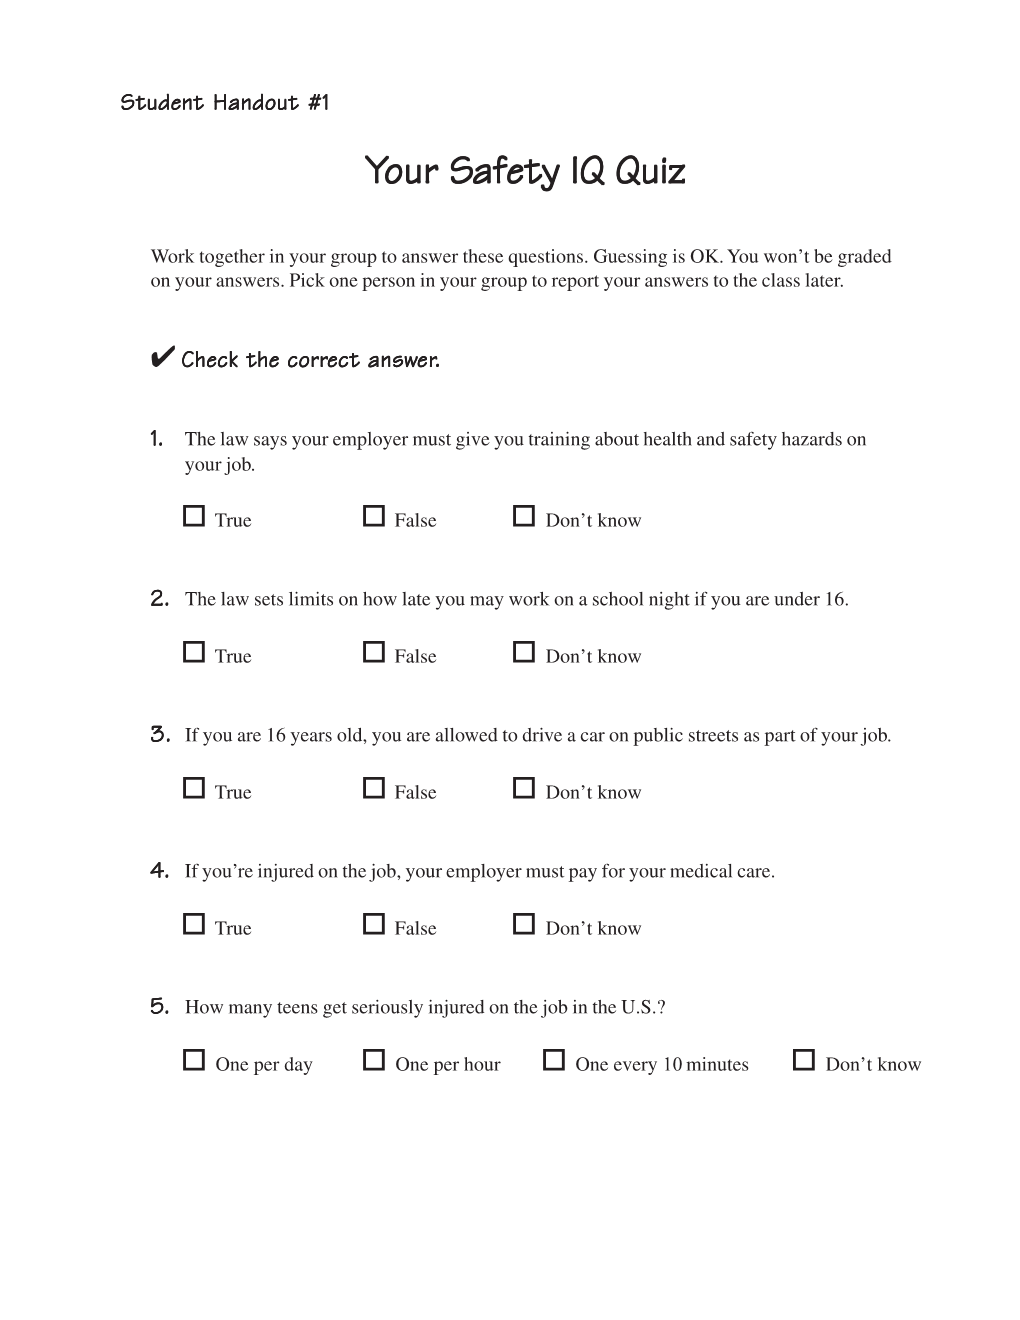 Your Safety IQ Quiz Afety IQ Quiz